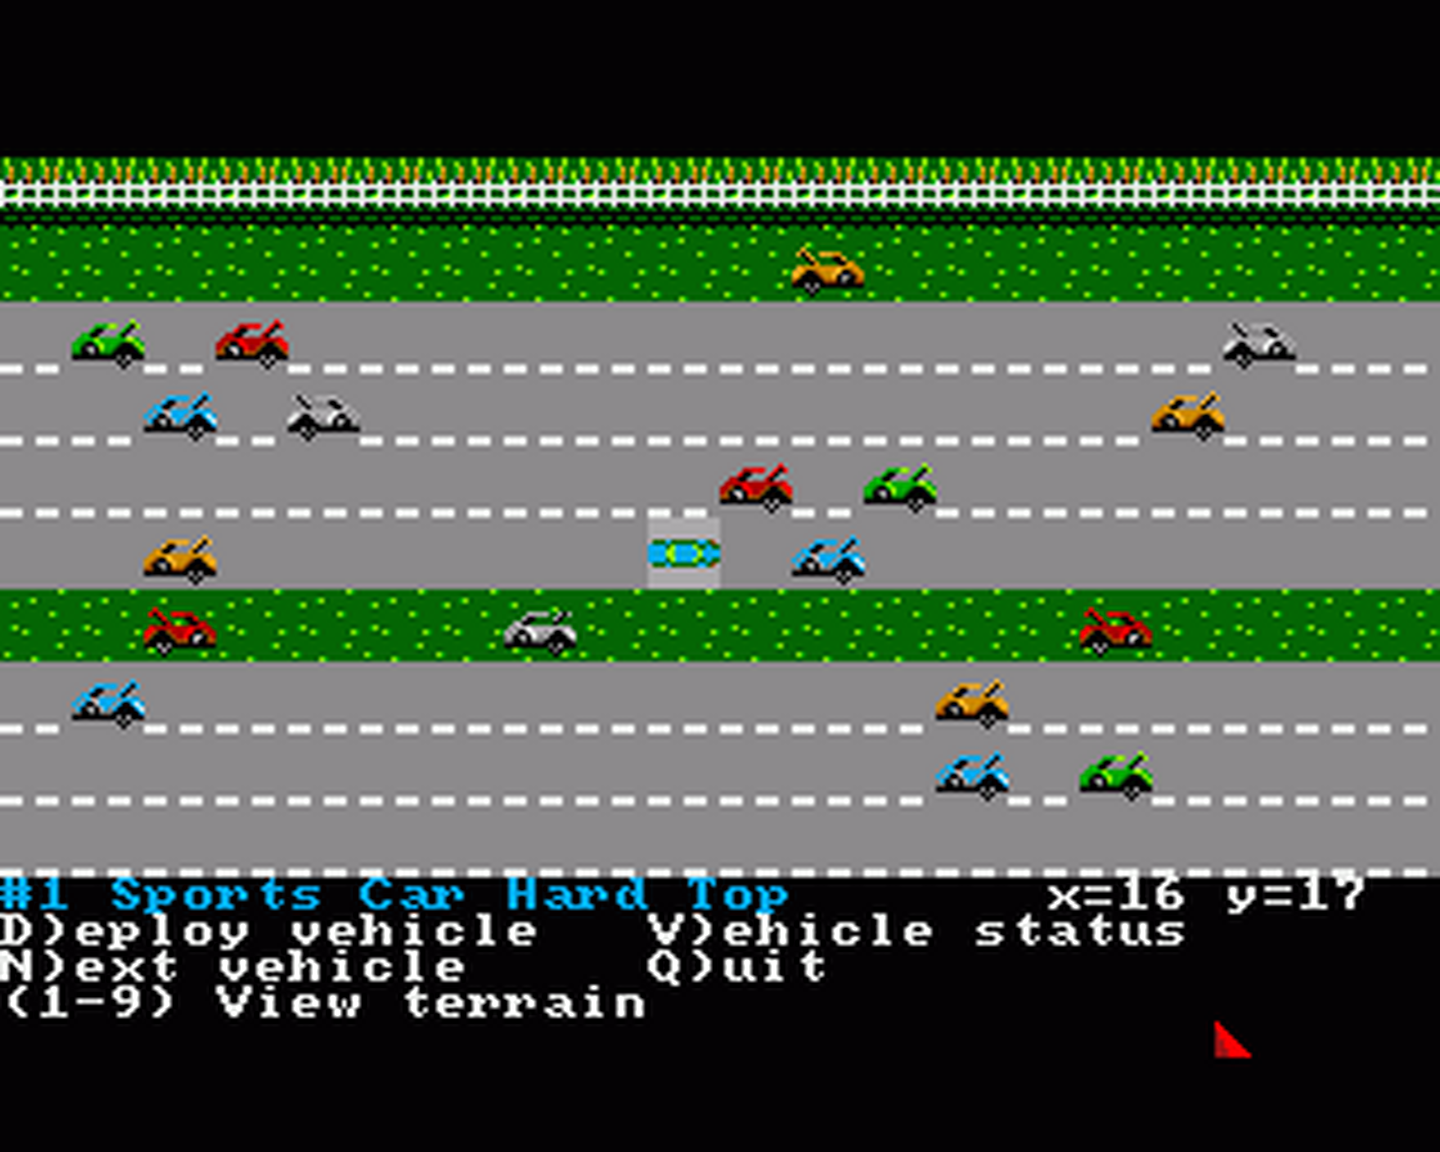 Amiga GameBase Roadwar_2000 SSI 1987